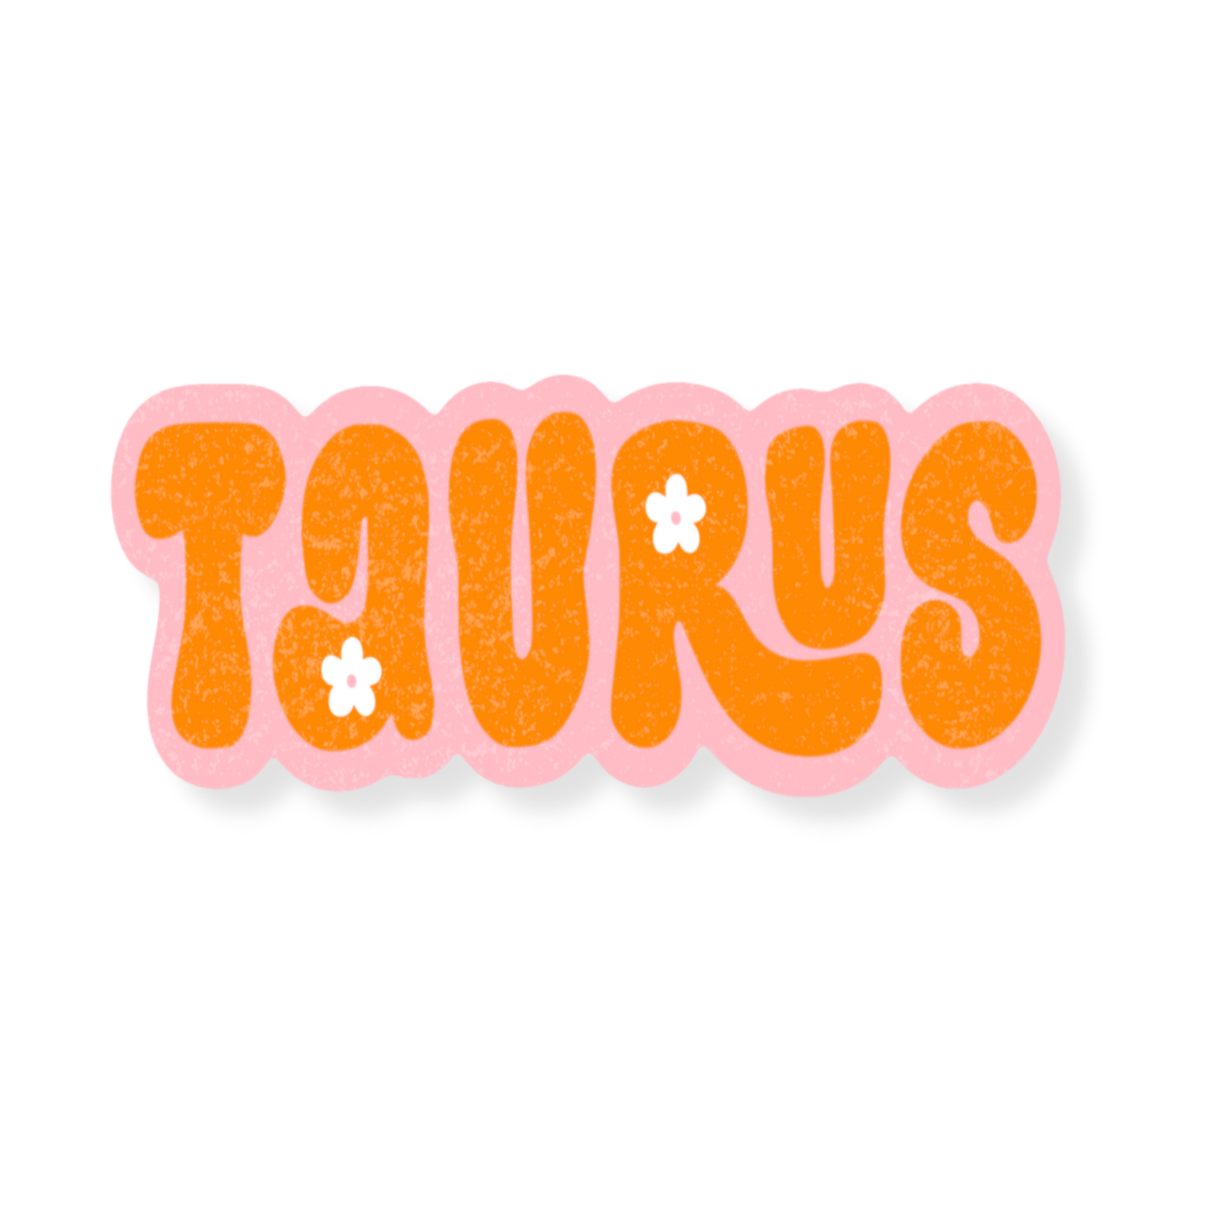 Taurus Zodiac Sticker - Calladine Creative Co